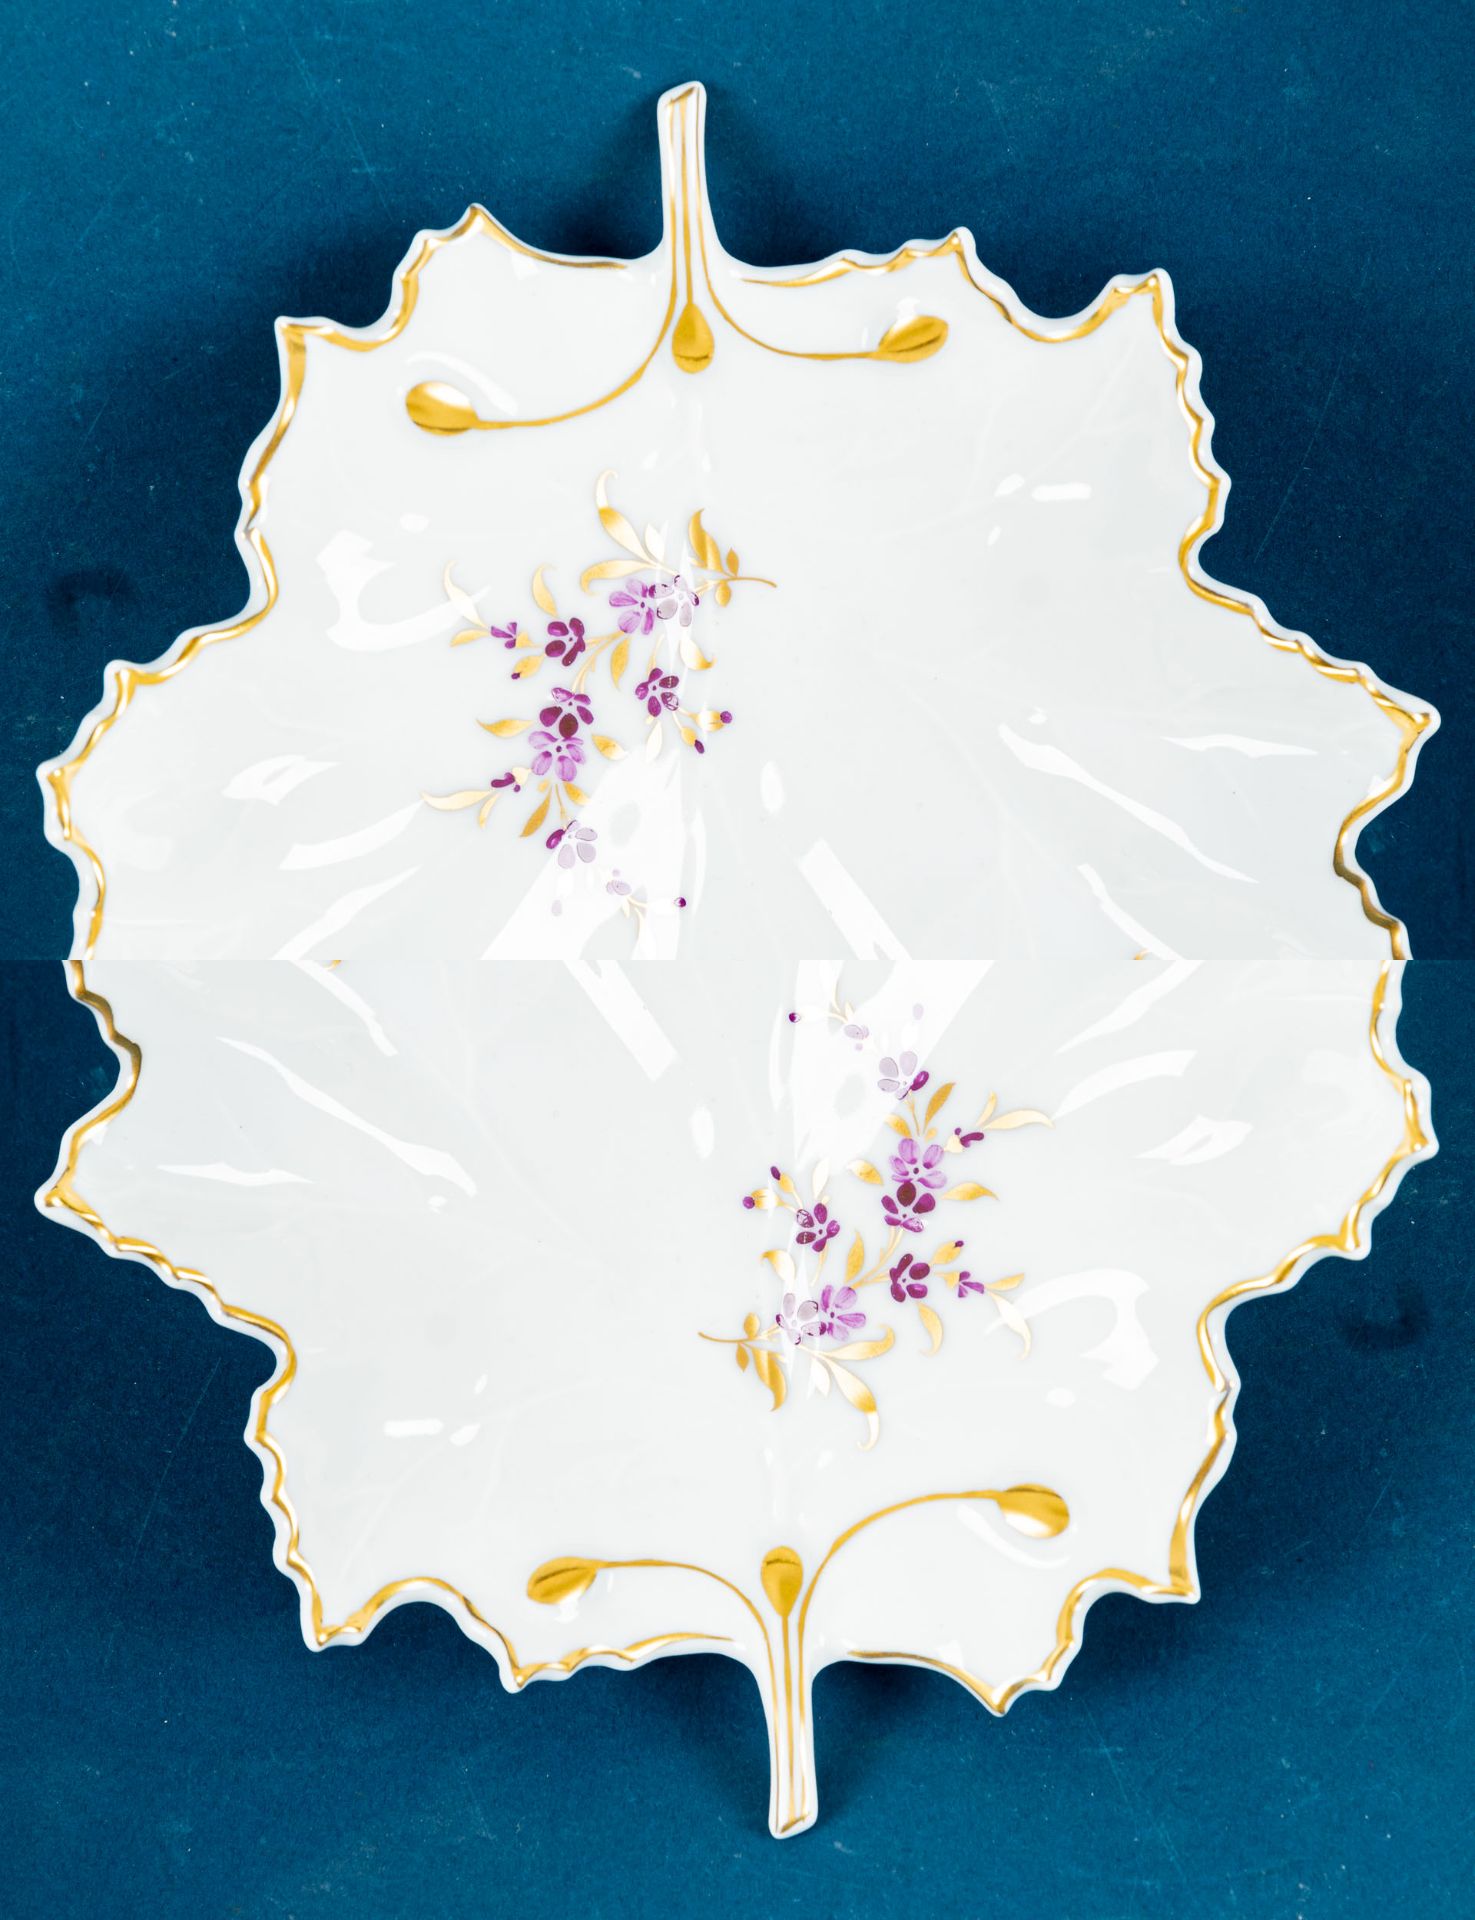 Blattschale, Höchst-Porzellan, Länge ca. 19 cm, Weißporzellan mit dezentem Floraldekor in Violett &